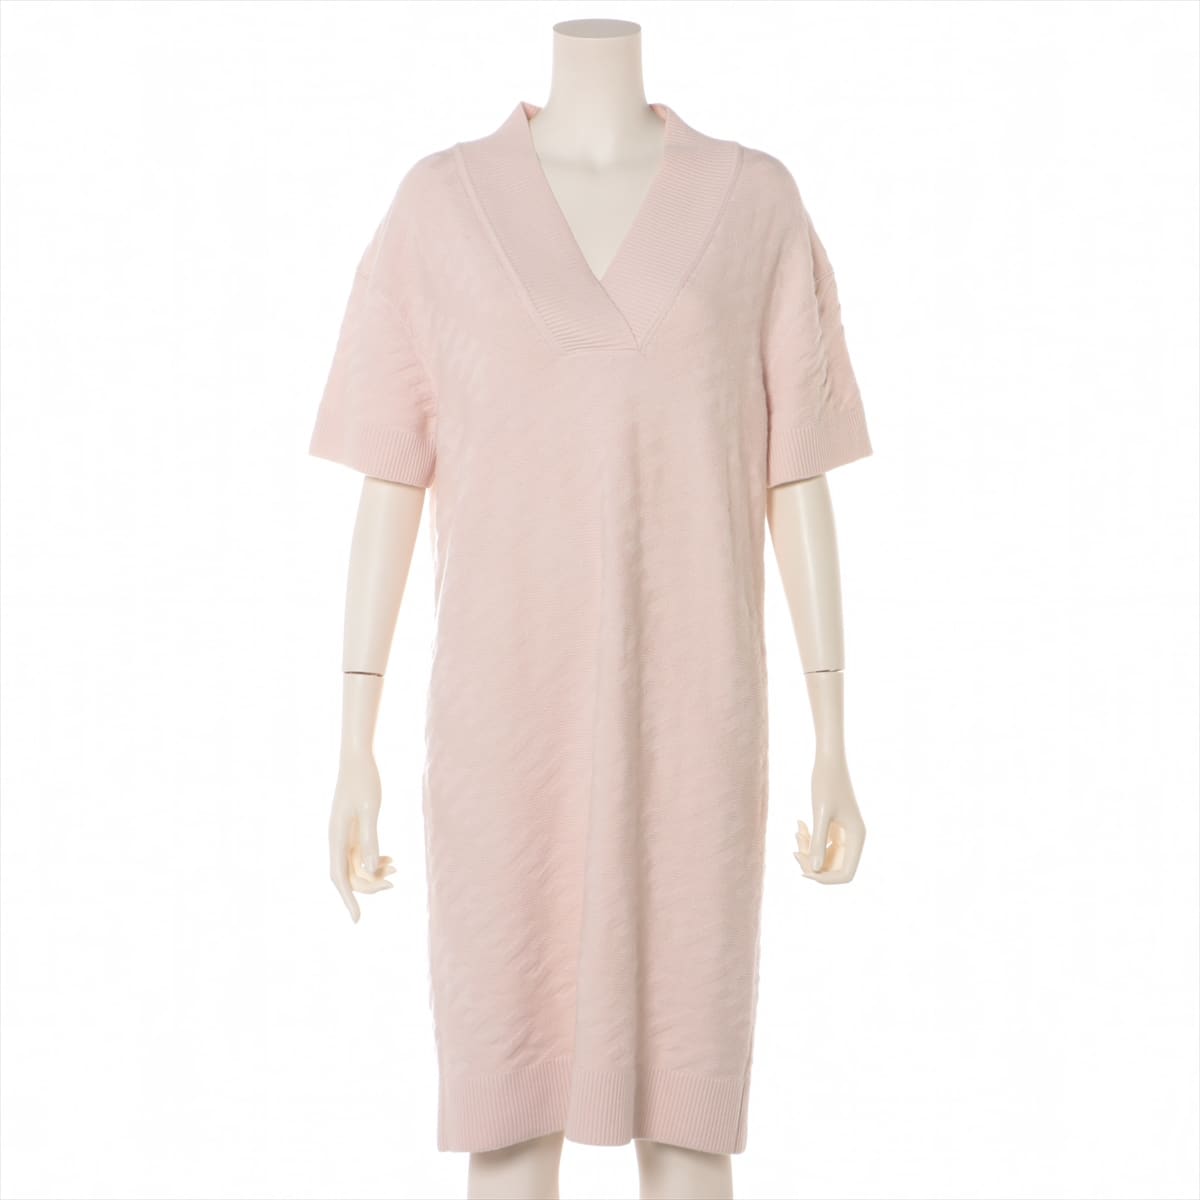 Hermès 22SS Virgin wool Knit dress 40 Ladies' Pink  V-neck Loungewear Voyage